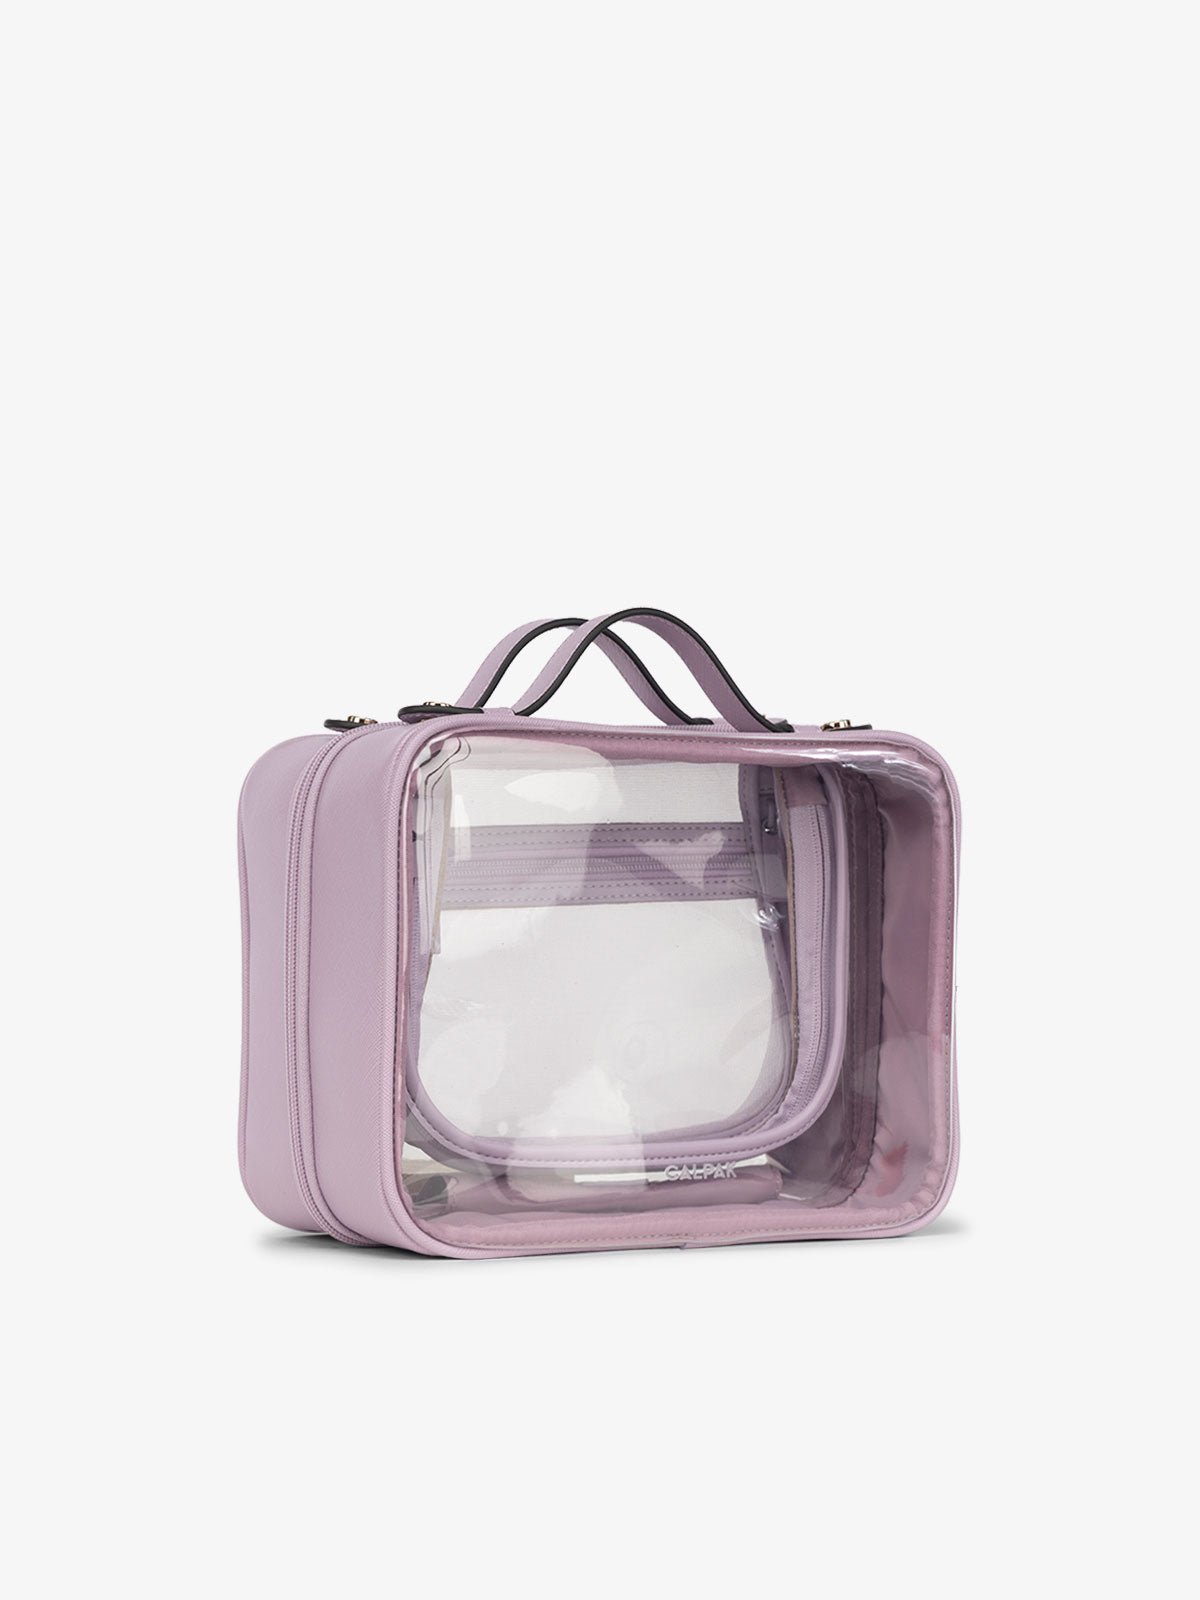 CALPAK clear makeup bag for women in purple